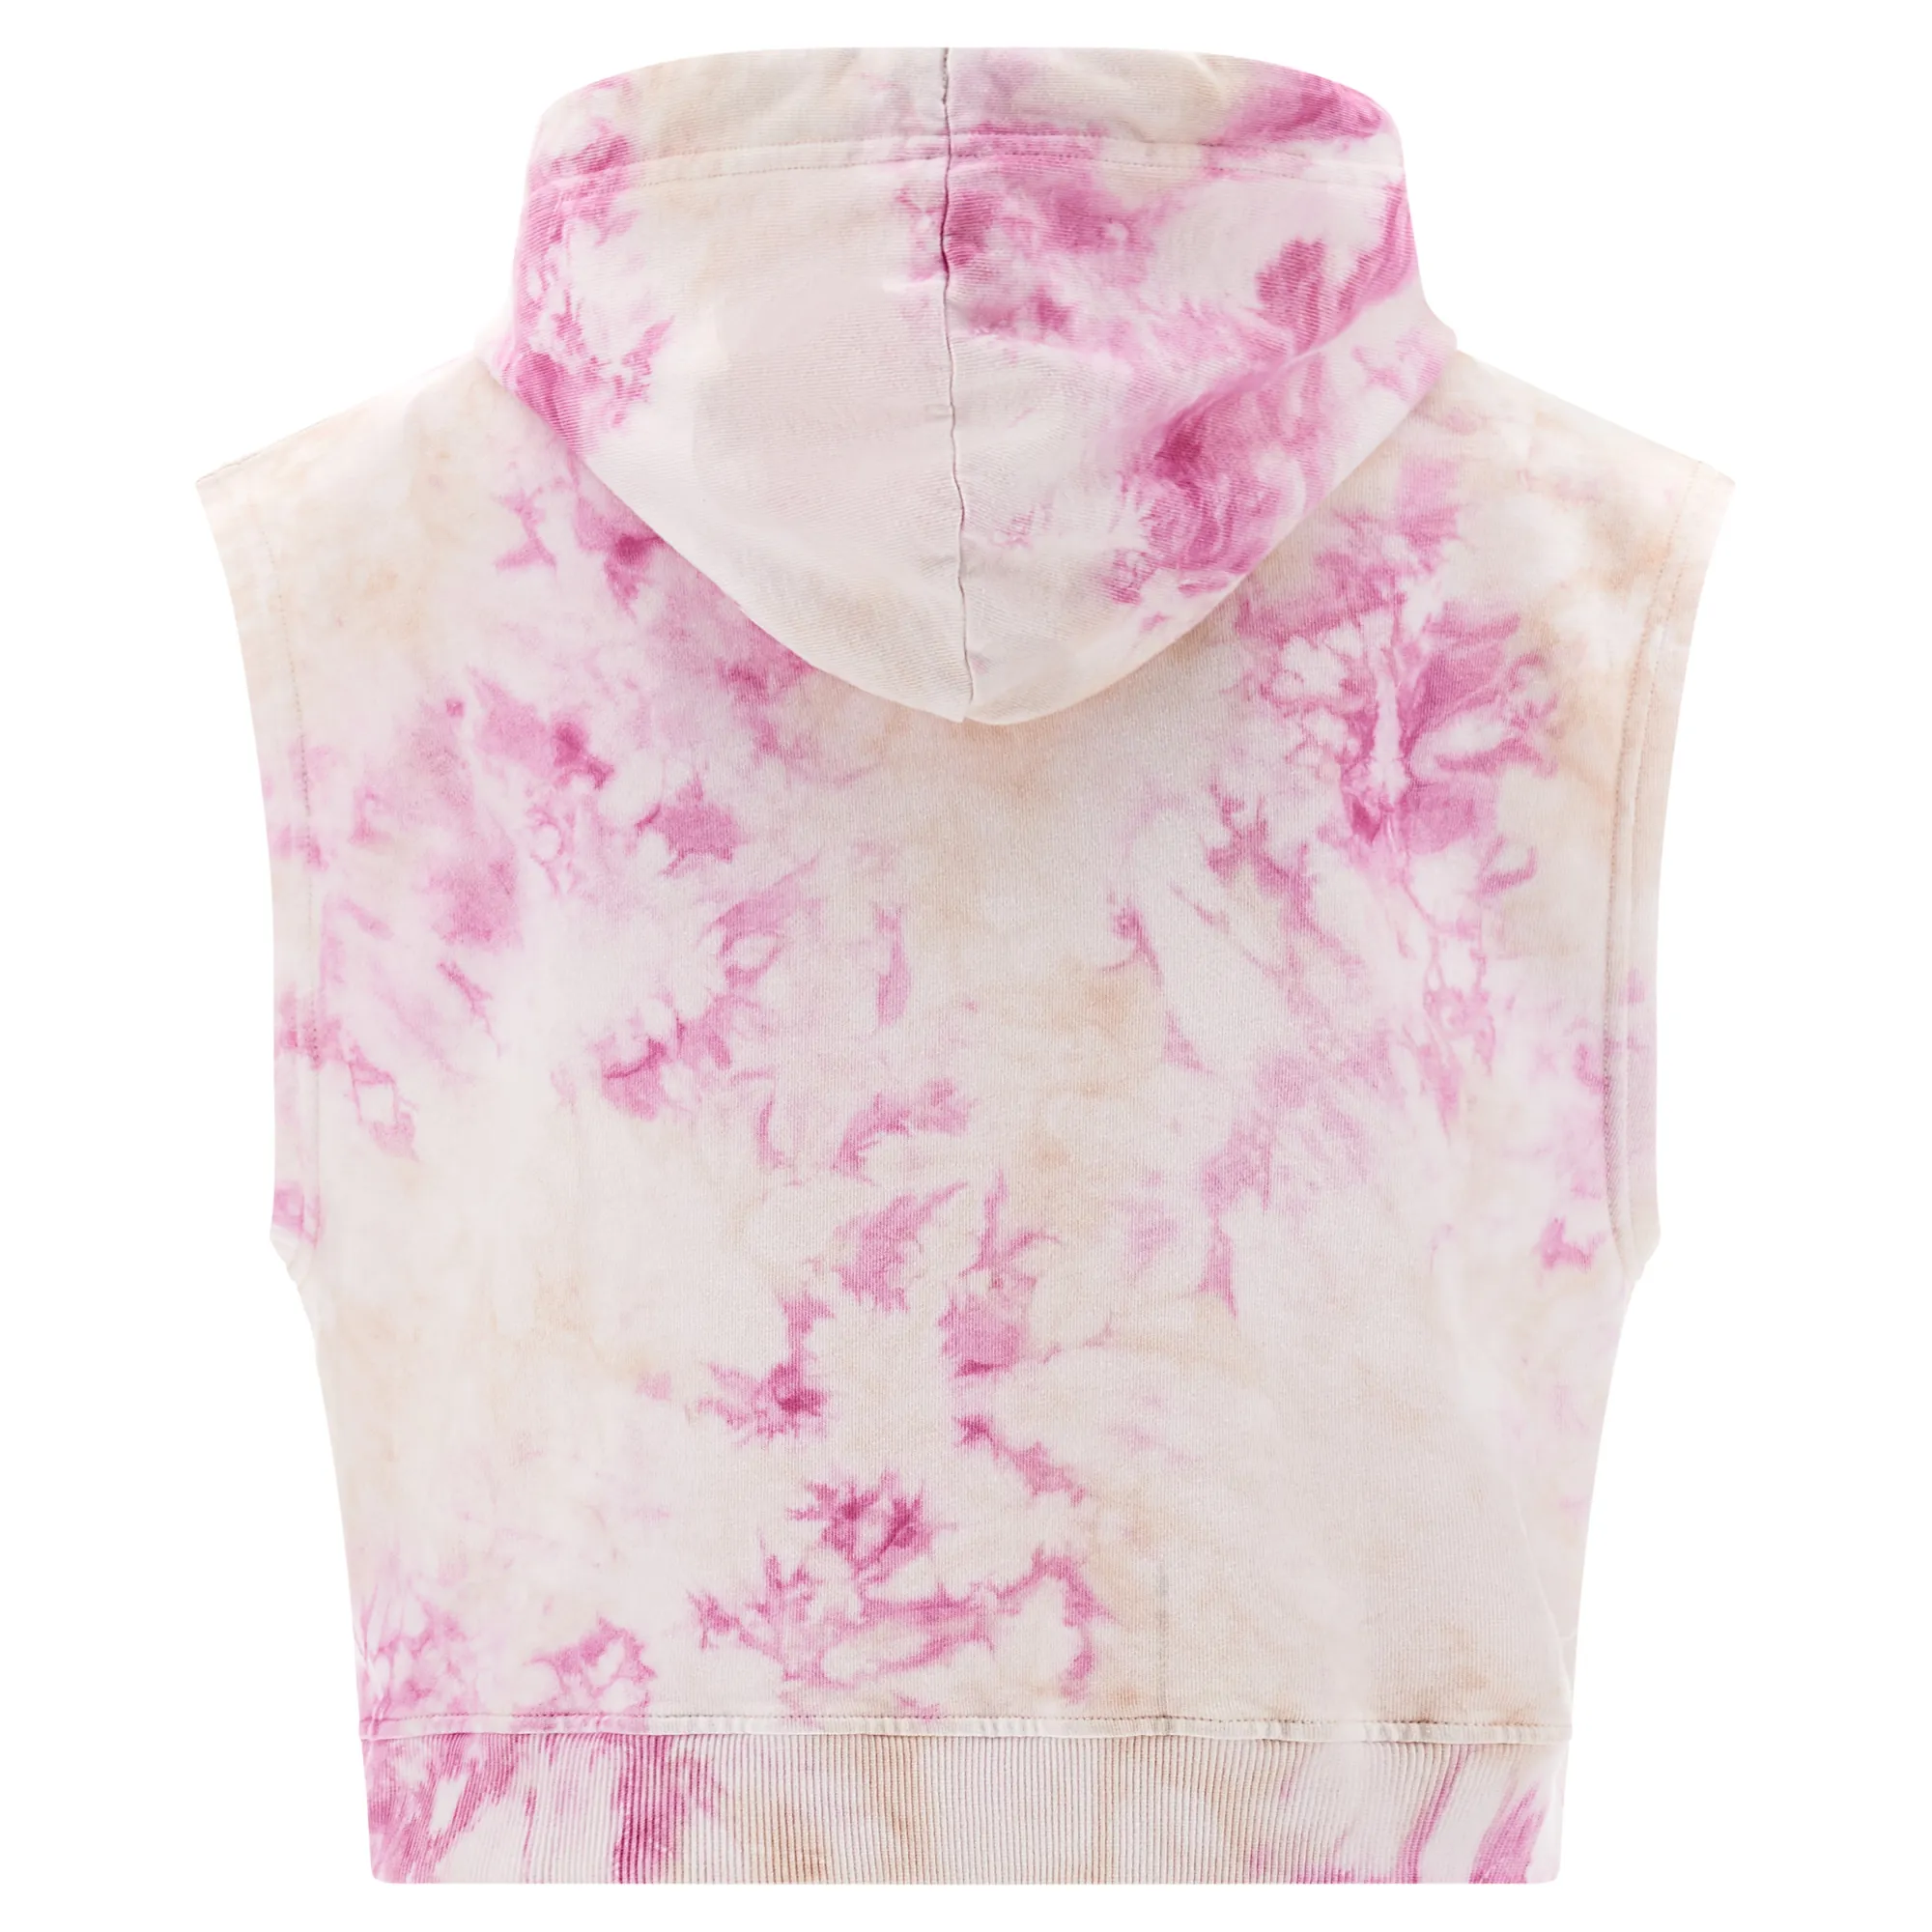 Freddy Damen Cropped Vest - Tie Dye Cotton Fleece - Tie Dye Fuchsia on Pink - MC180